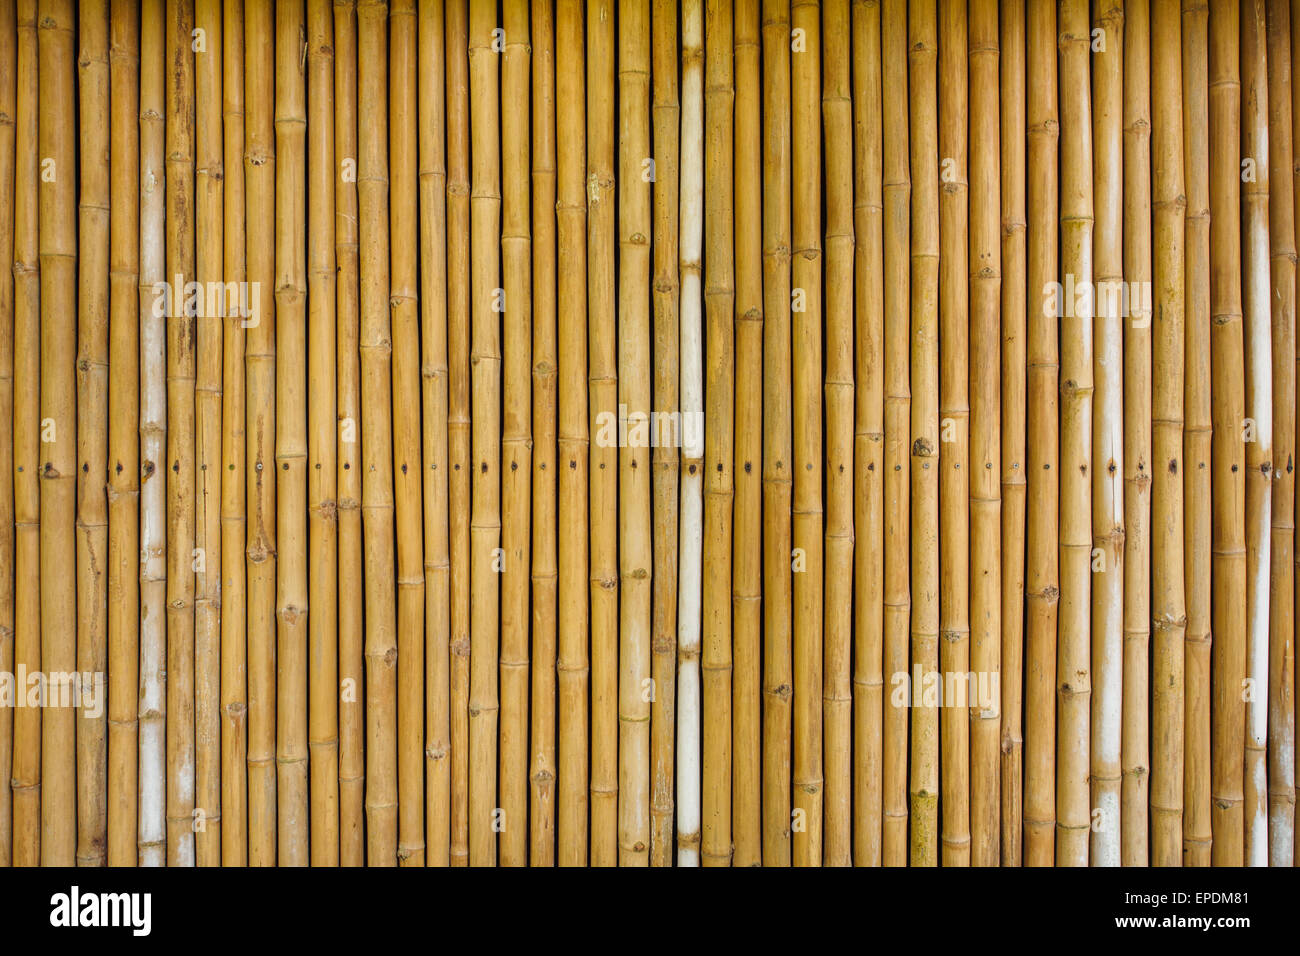 bamboo fence background Stock Photo